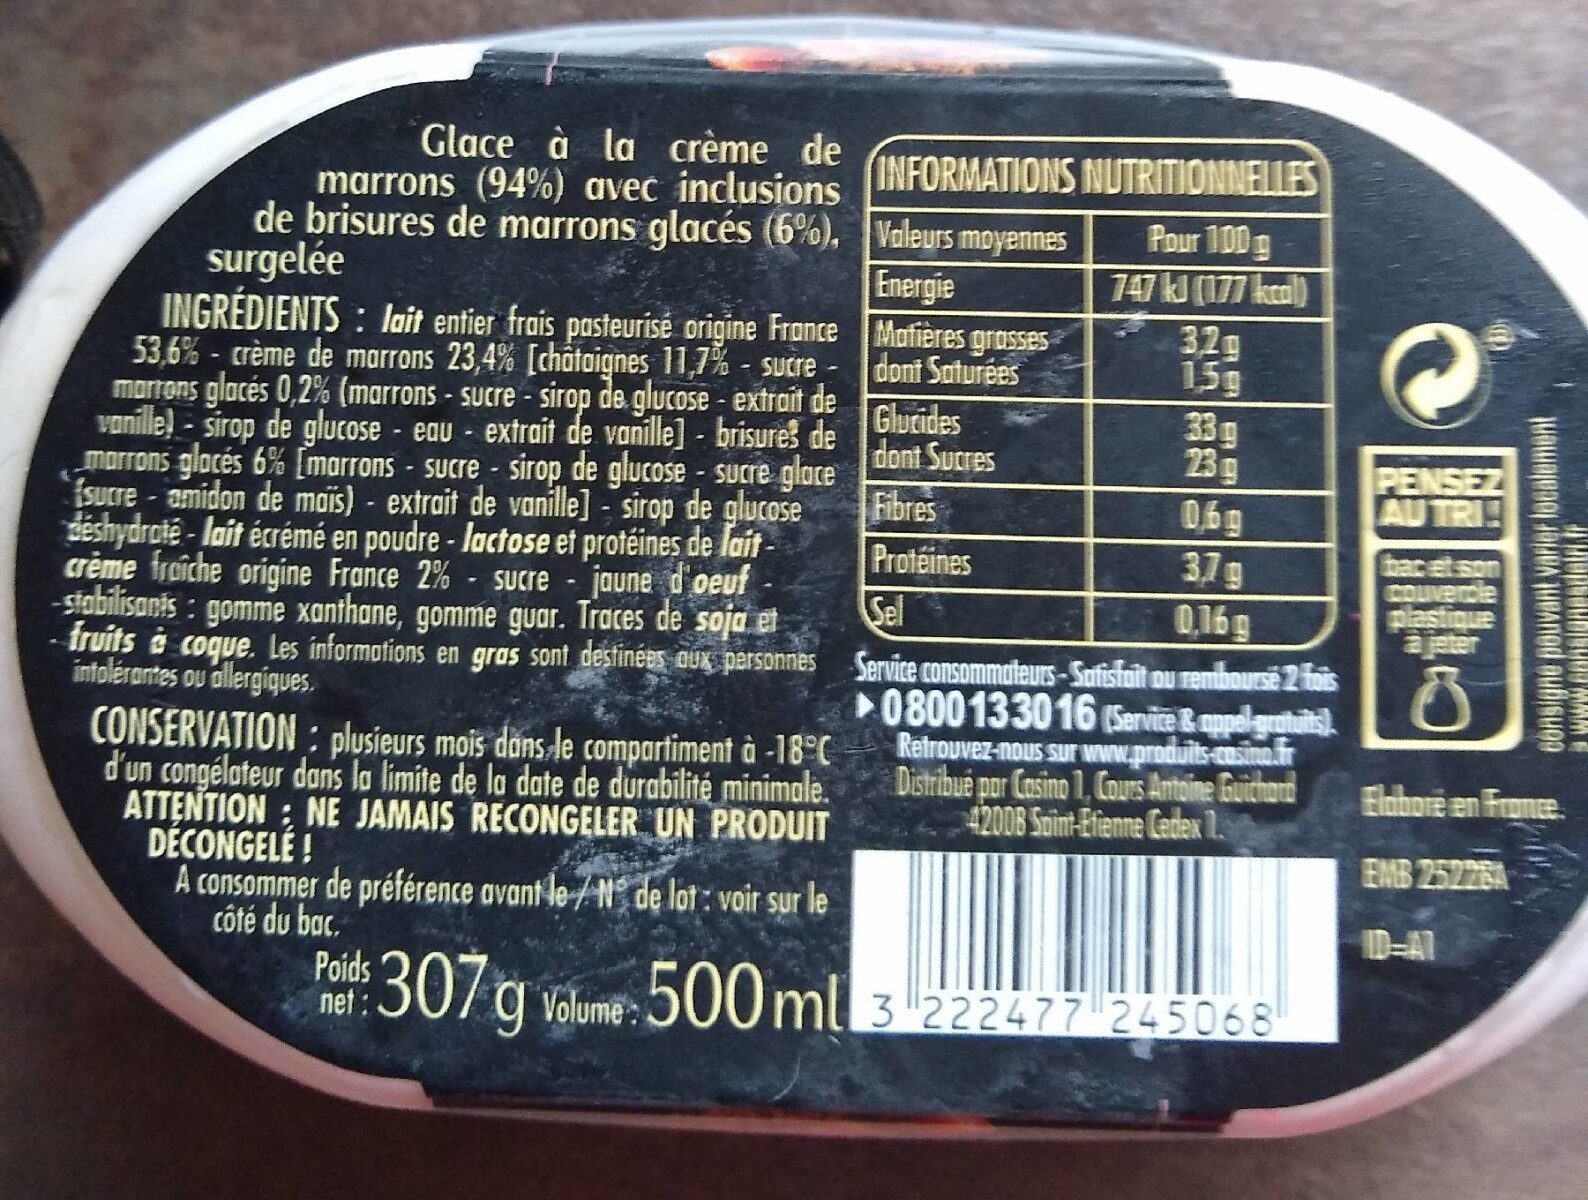 La Fabuleuse Glace Crème de marrons - Nutrition facts - fr